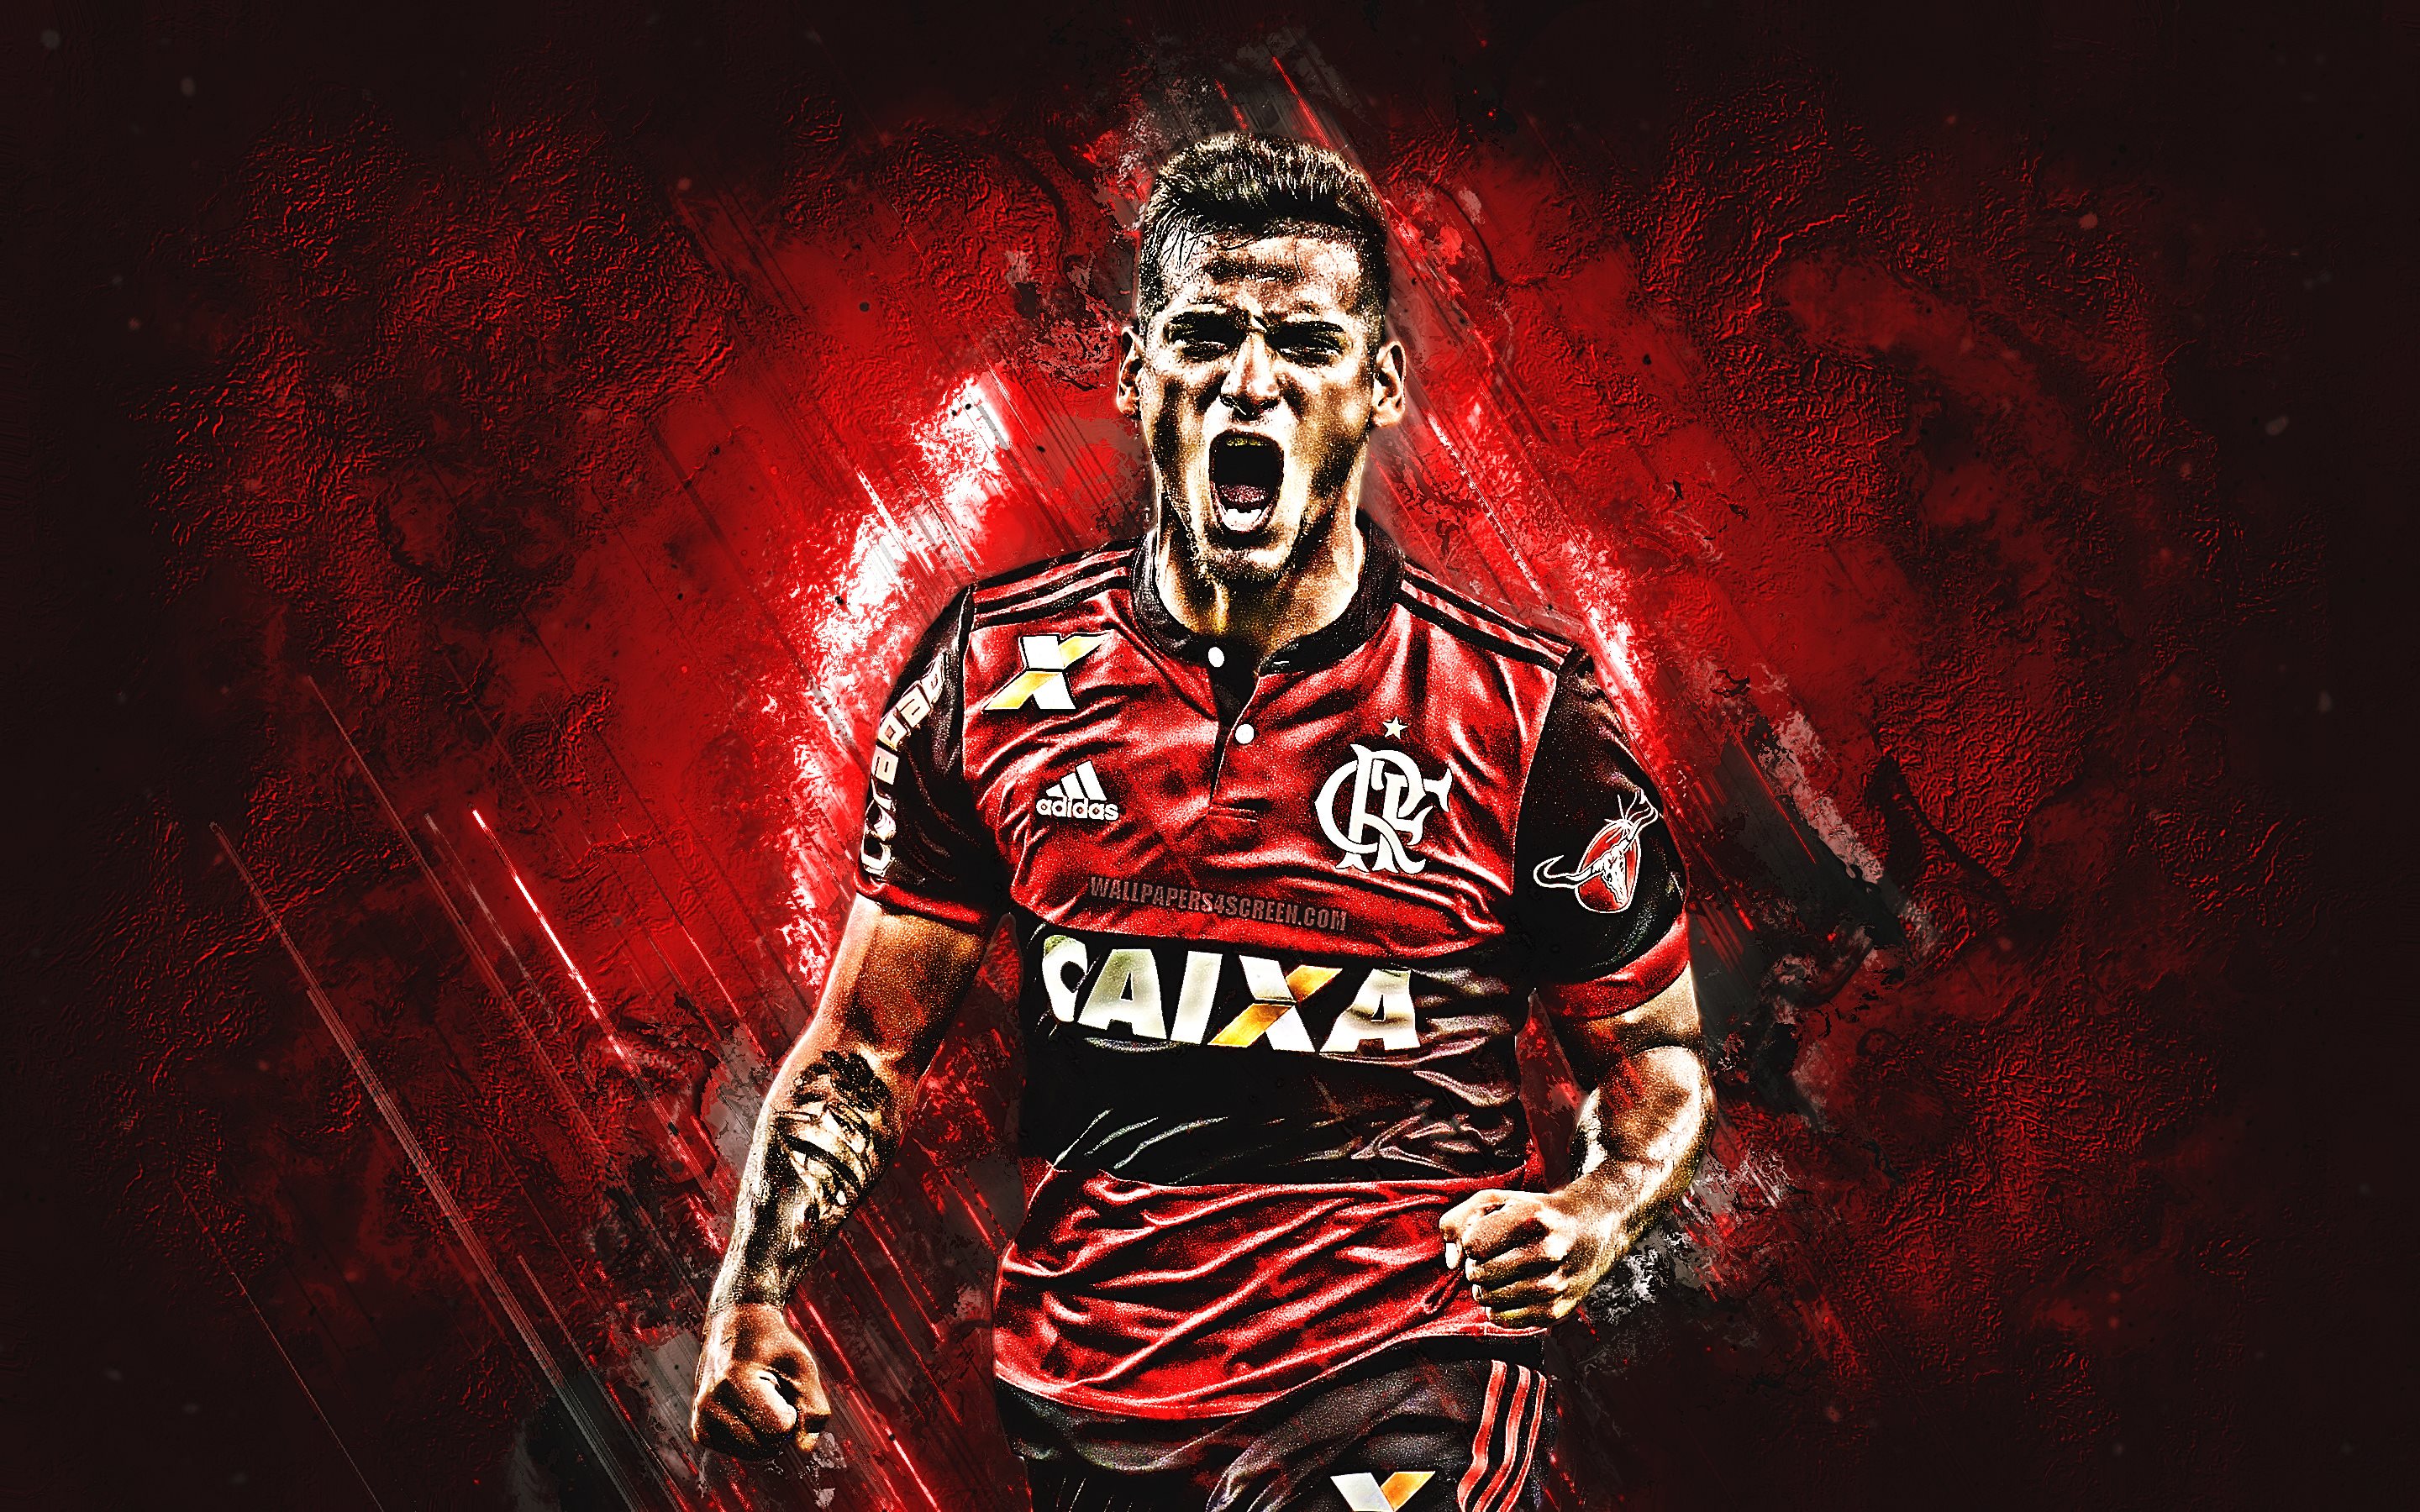 ダウンロード画像 ミゲルtrauco グランジ アテロドフラメンゴfc 赤石 サッカー Trauco ブラジルセリエa ペルーサッカー選手 目標 ブラジル 画面の解像度 x1800 壁紙デスクトップ上